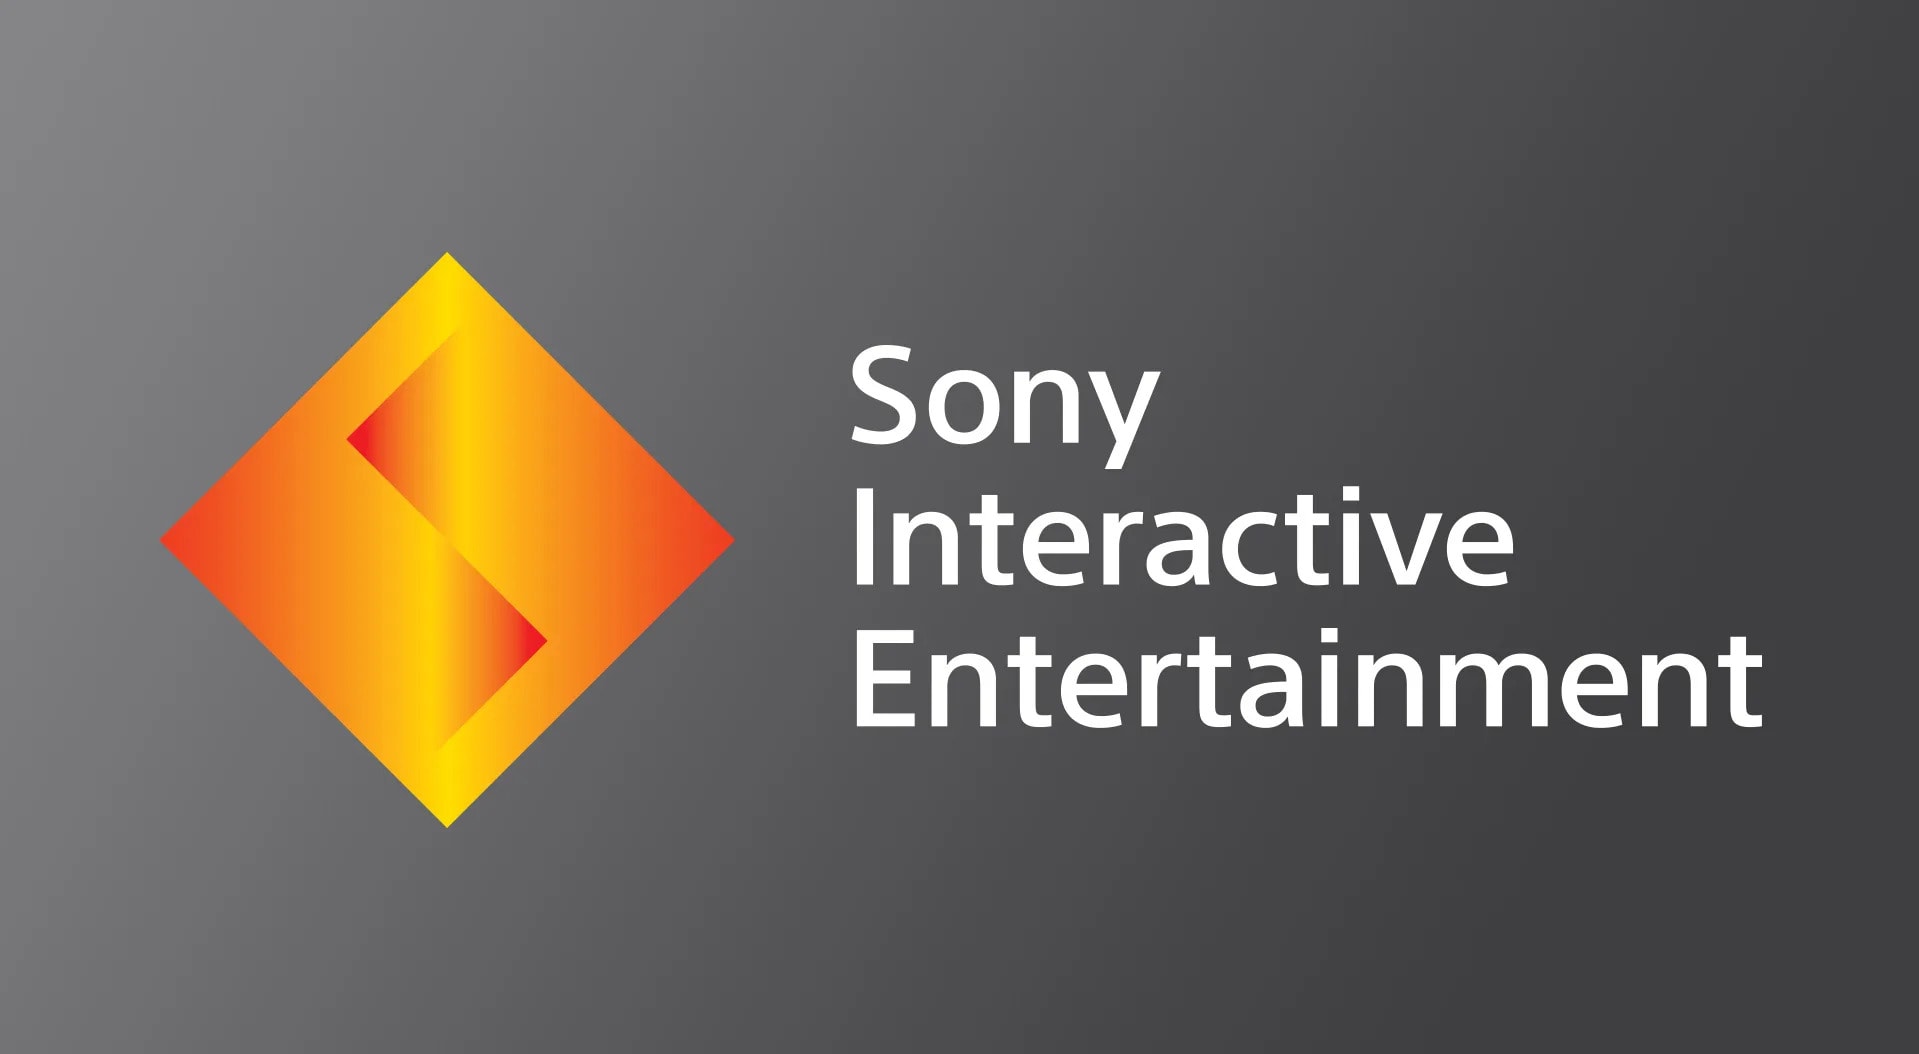 Sony szykuje się do czegoś wielkiego! W przyszłym tygodniu firma ogłosi nową strategię